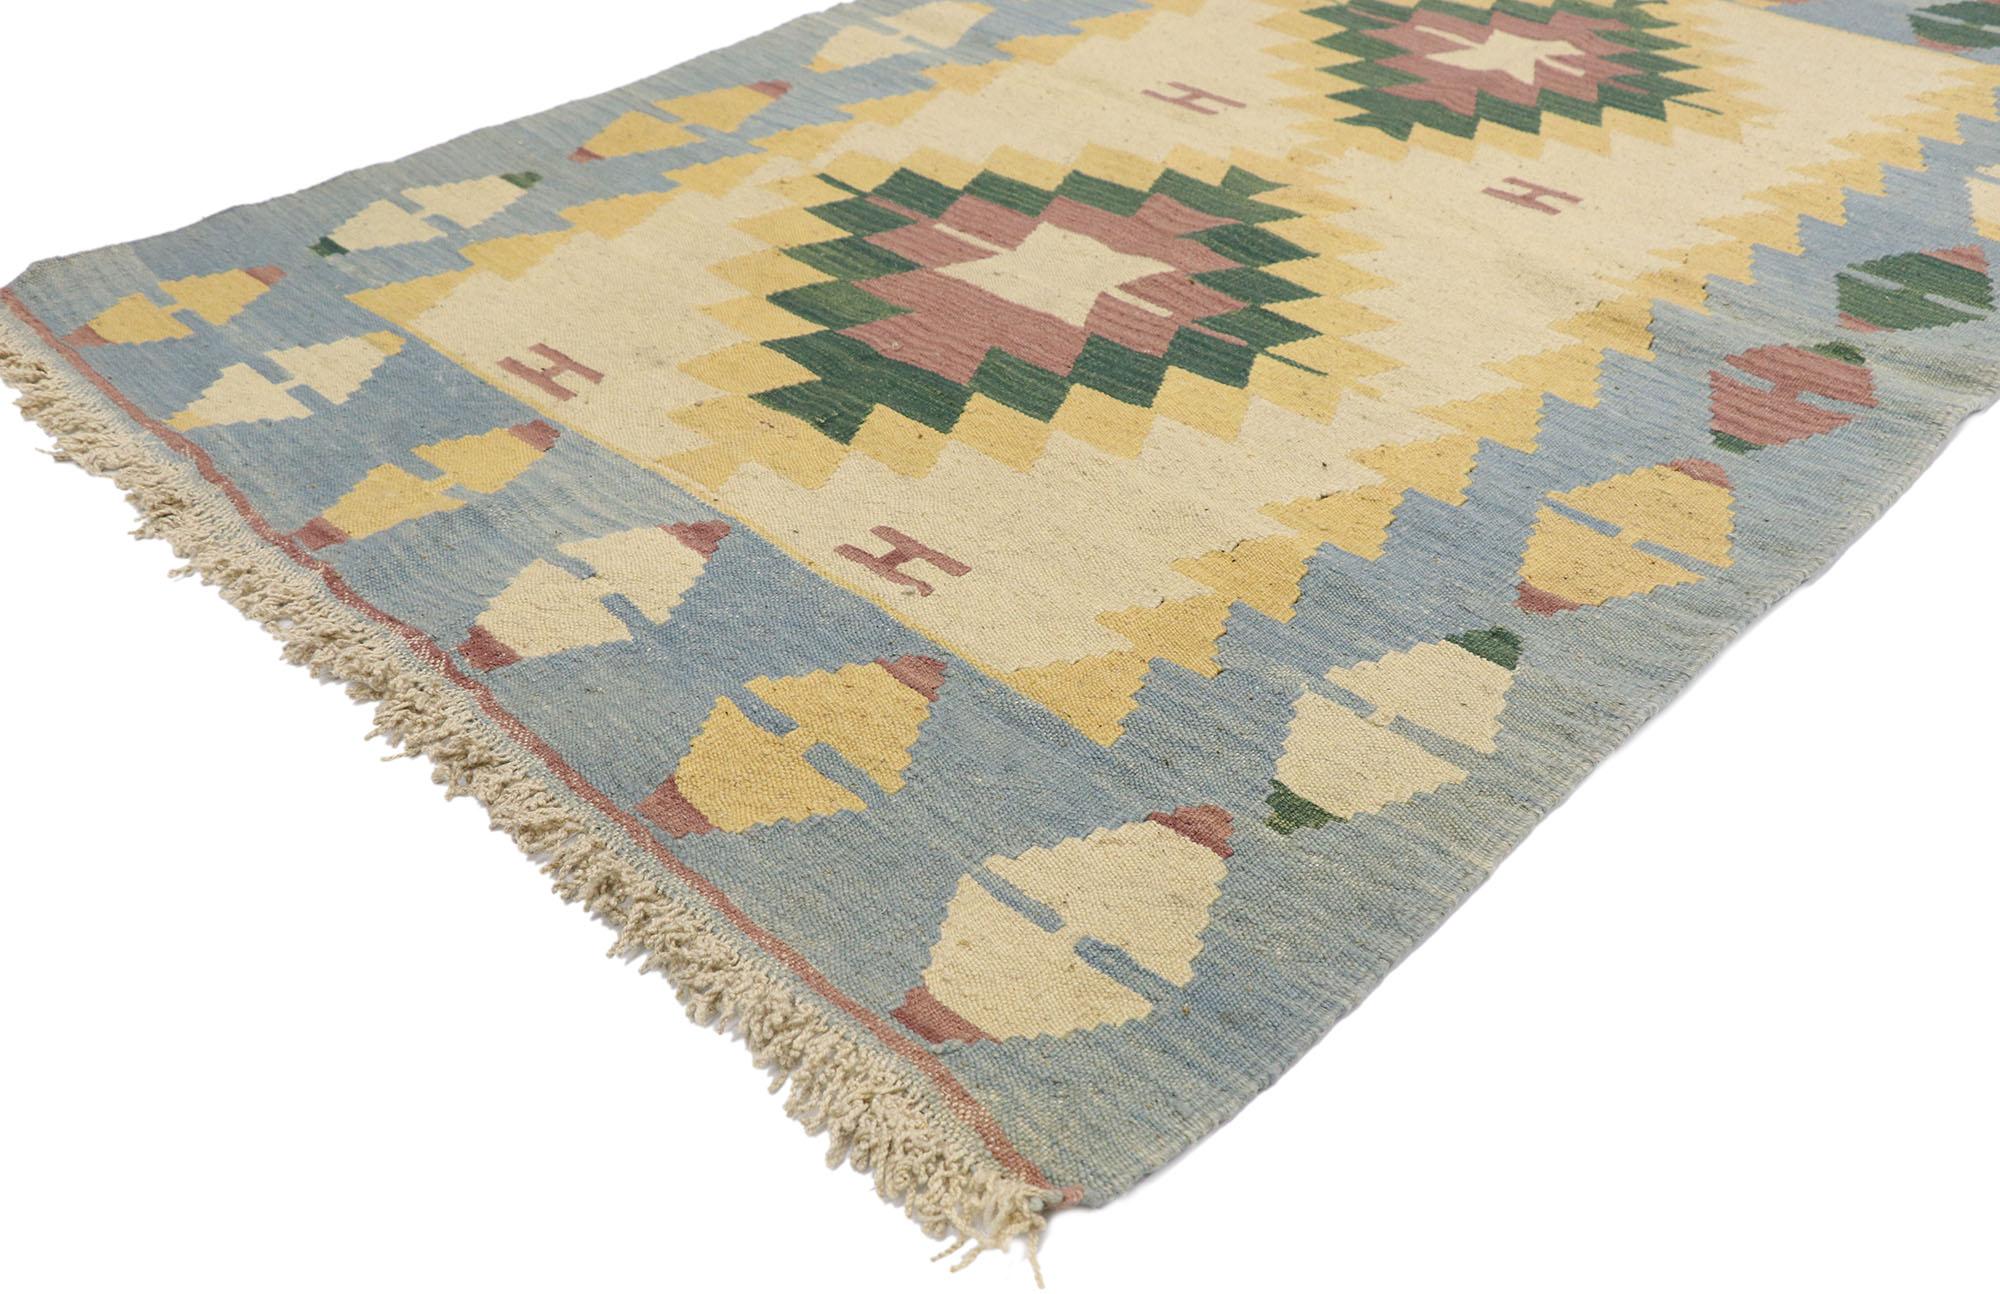 77810 Vintage Persisch Shiraz Kilim Teppich mit Boho Chic Tribal Stil 03'10 x 05'09. Voller winziger Details und einem kühnen, ausdrucksstarken Design, kombiniert mit leuchtenden Farben und Tribal-Stil, ist dieser handgewebte persische